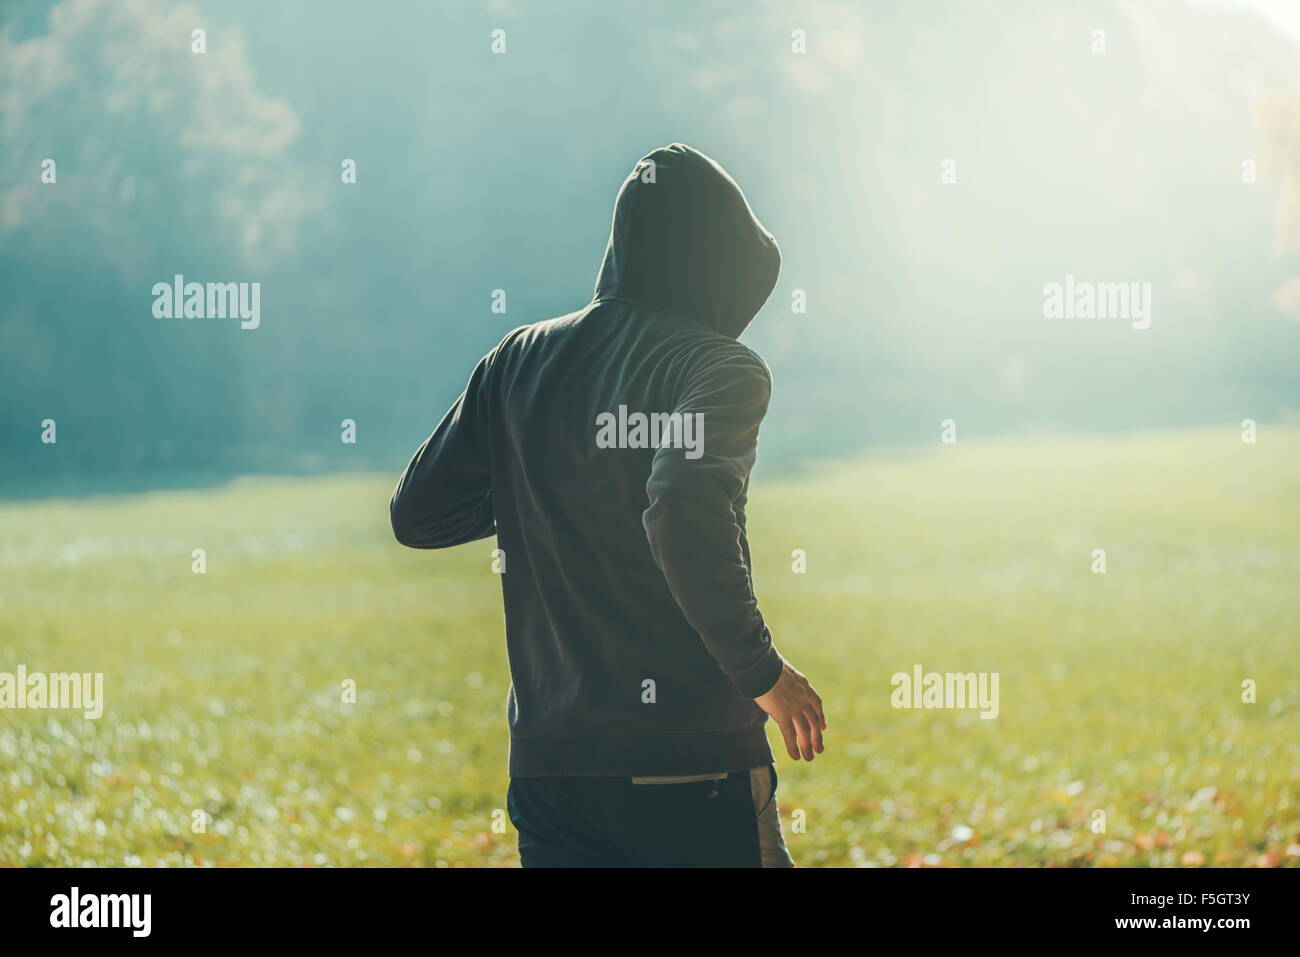 Uomo incappucciato jogging nel parco di inizio autunno mattina, sport e stile di vita sano concetto, dai toni rétro con immagine Foto Stock